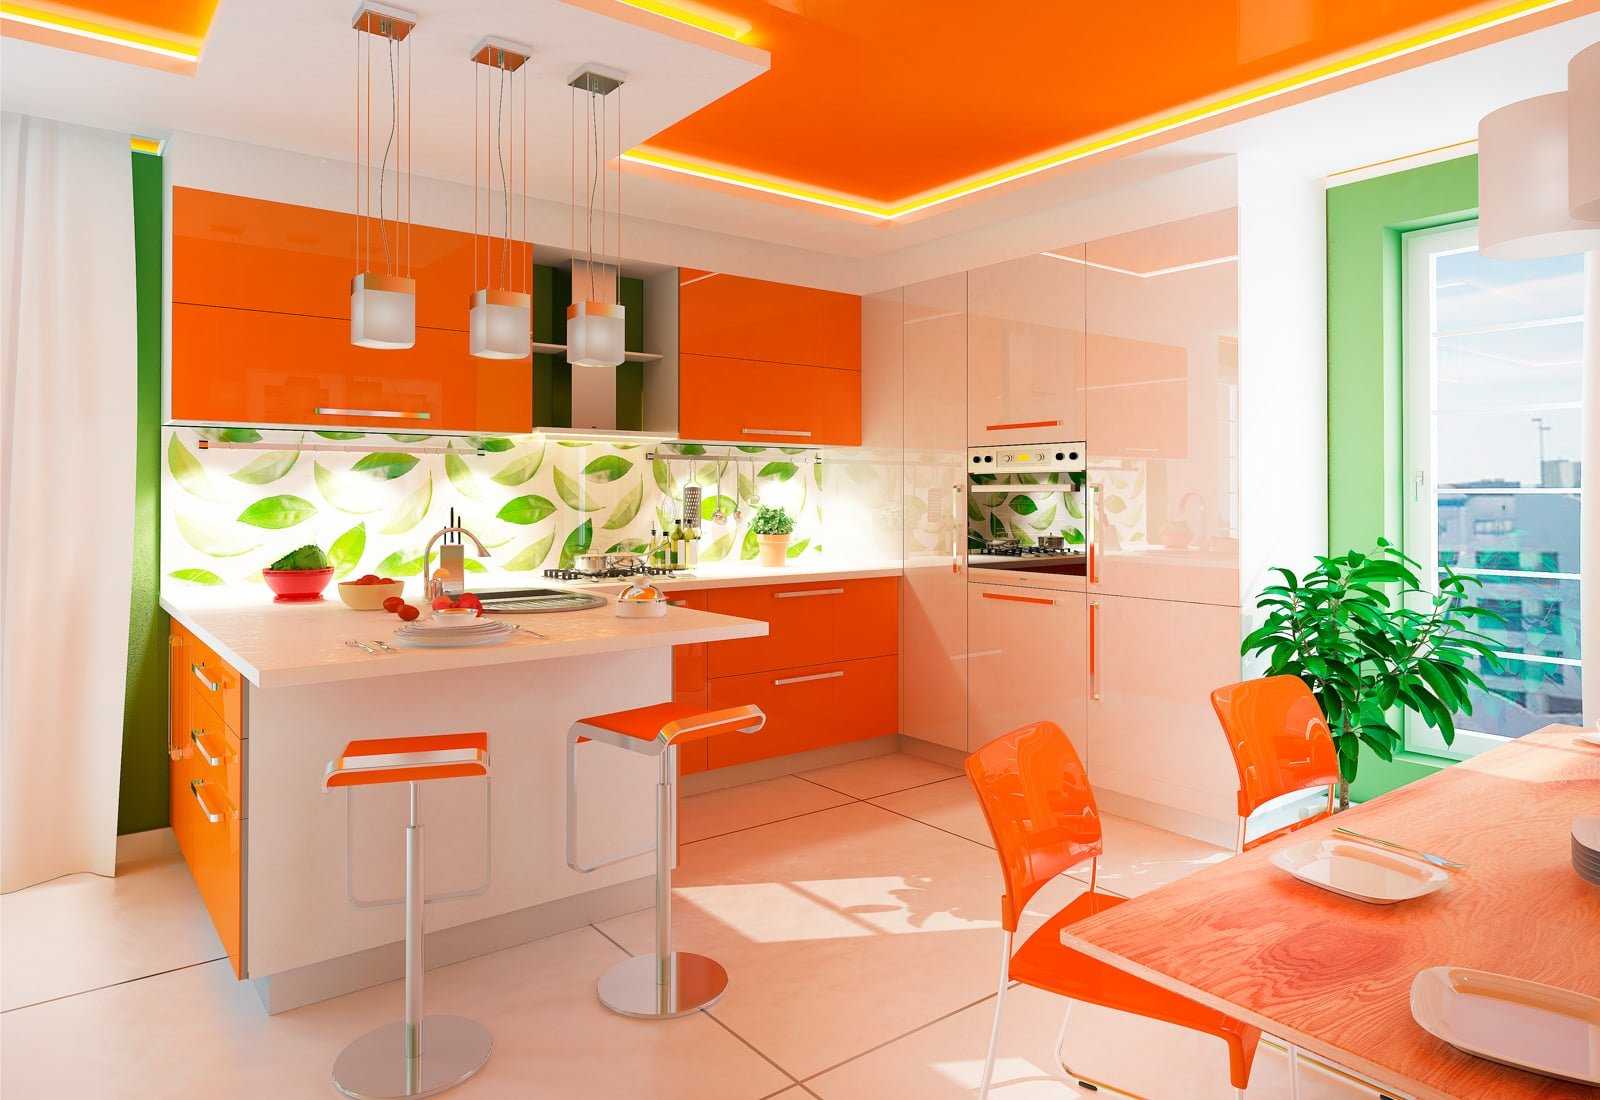 Бордовая кухня в интерьере: фото готовых дизайн-проектов интерьера, кухонные гарнитуры цвета бордо, обои